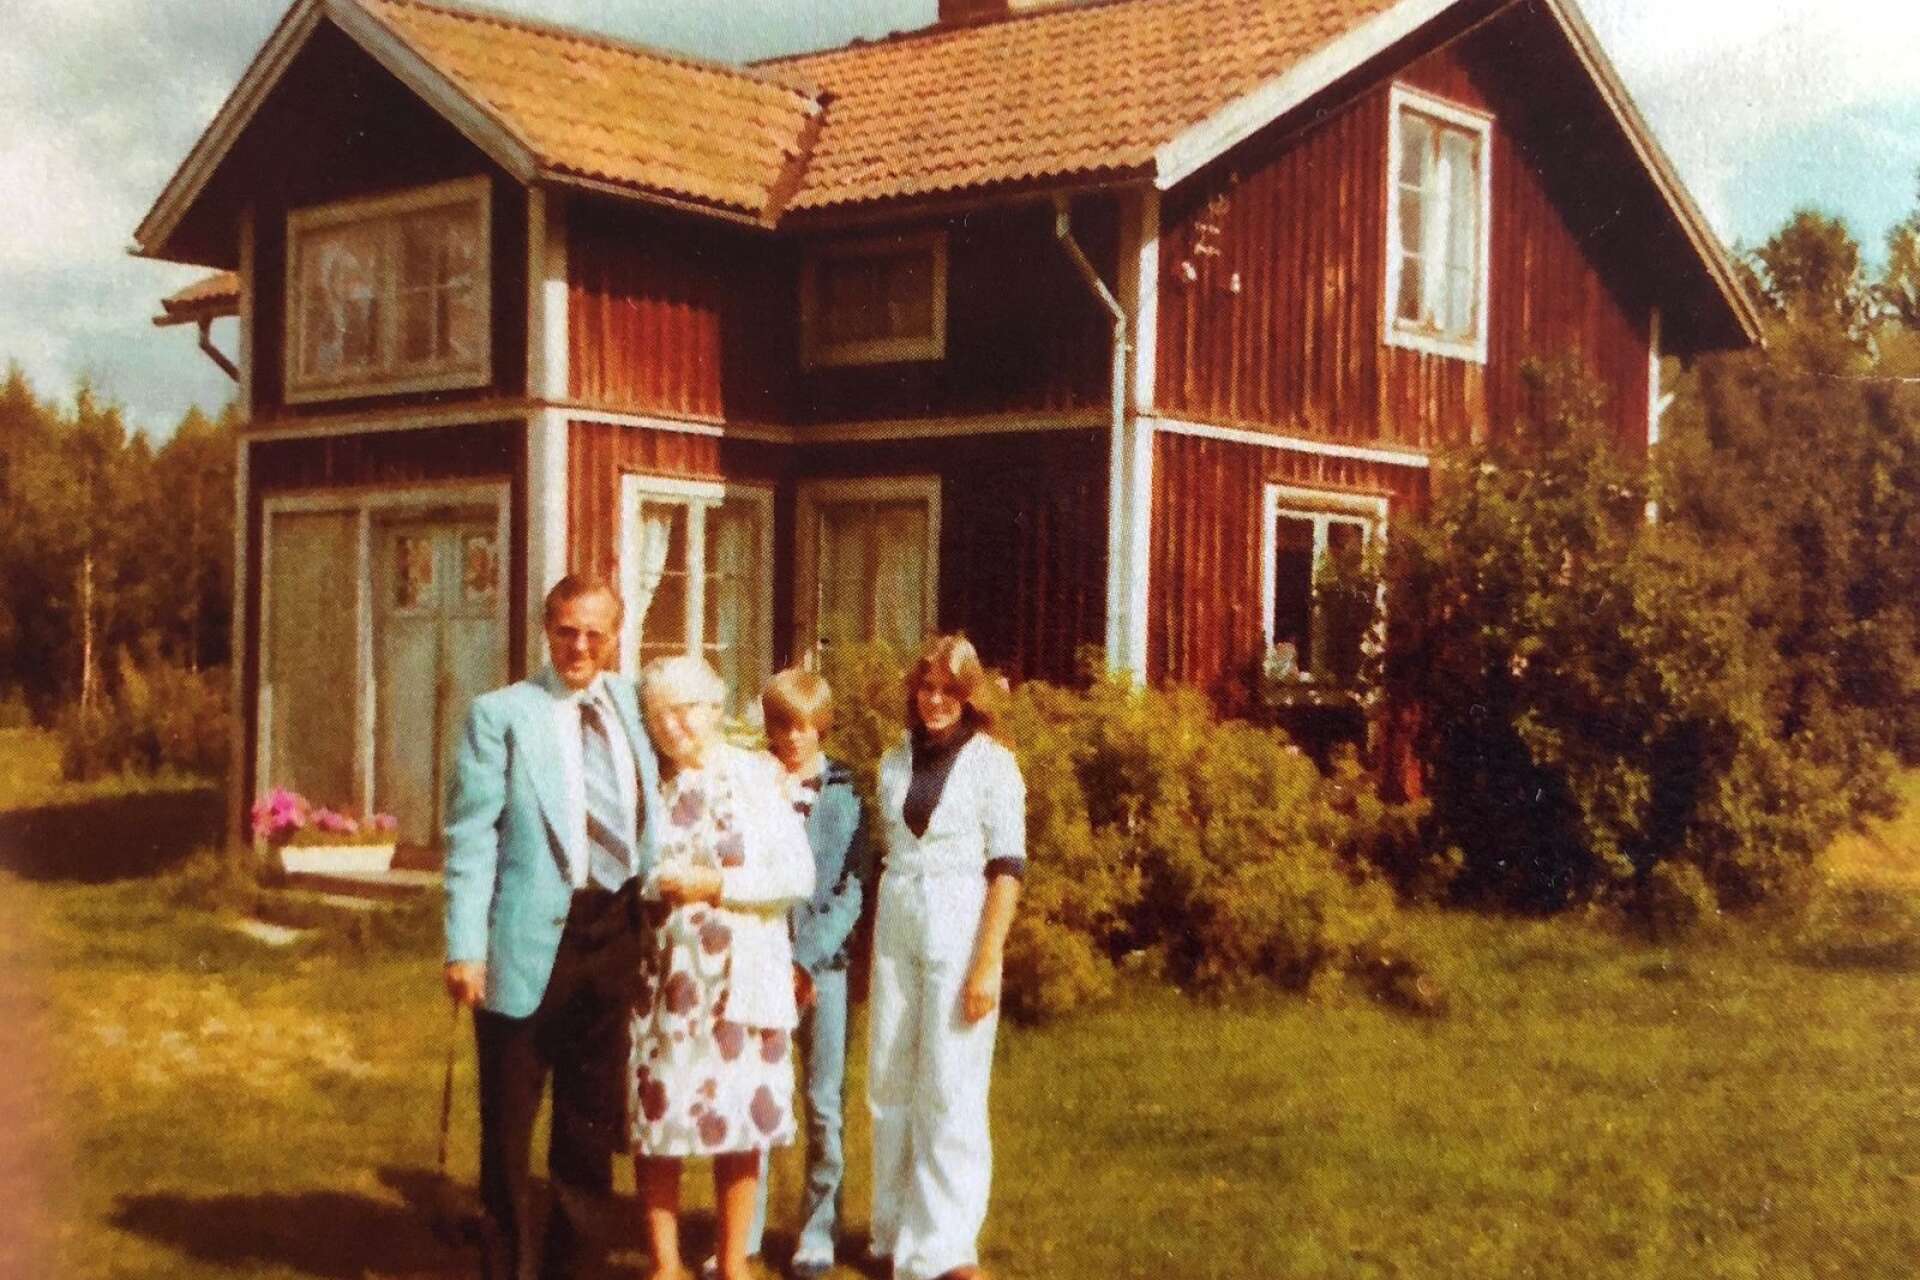 Nils farmor Frida, i mitten, framför föräldrahemmet i Lövstaholm. Bilden är tagen i slutet på 70-talet. Mannen på bilden är Nils farbror Robert med sina barn Brian och Stacey.